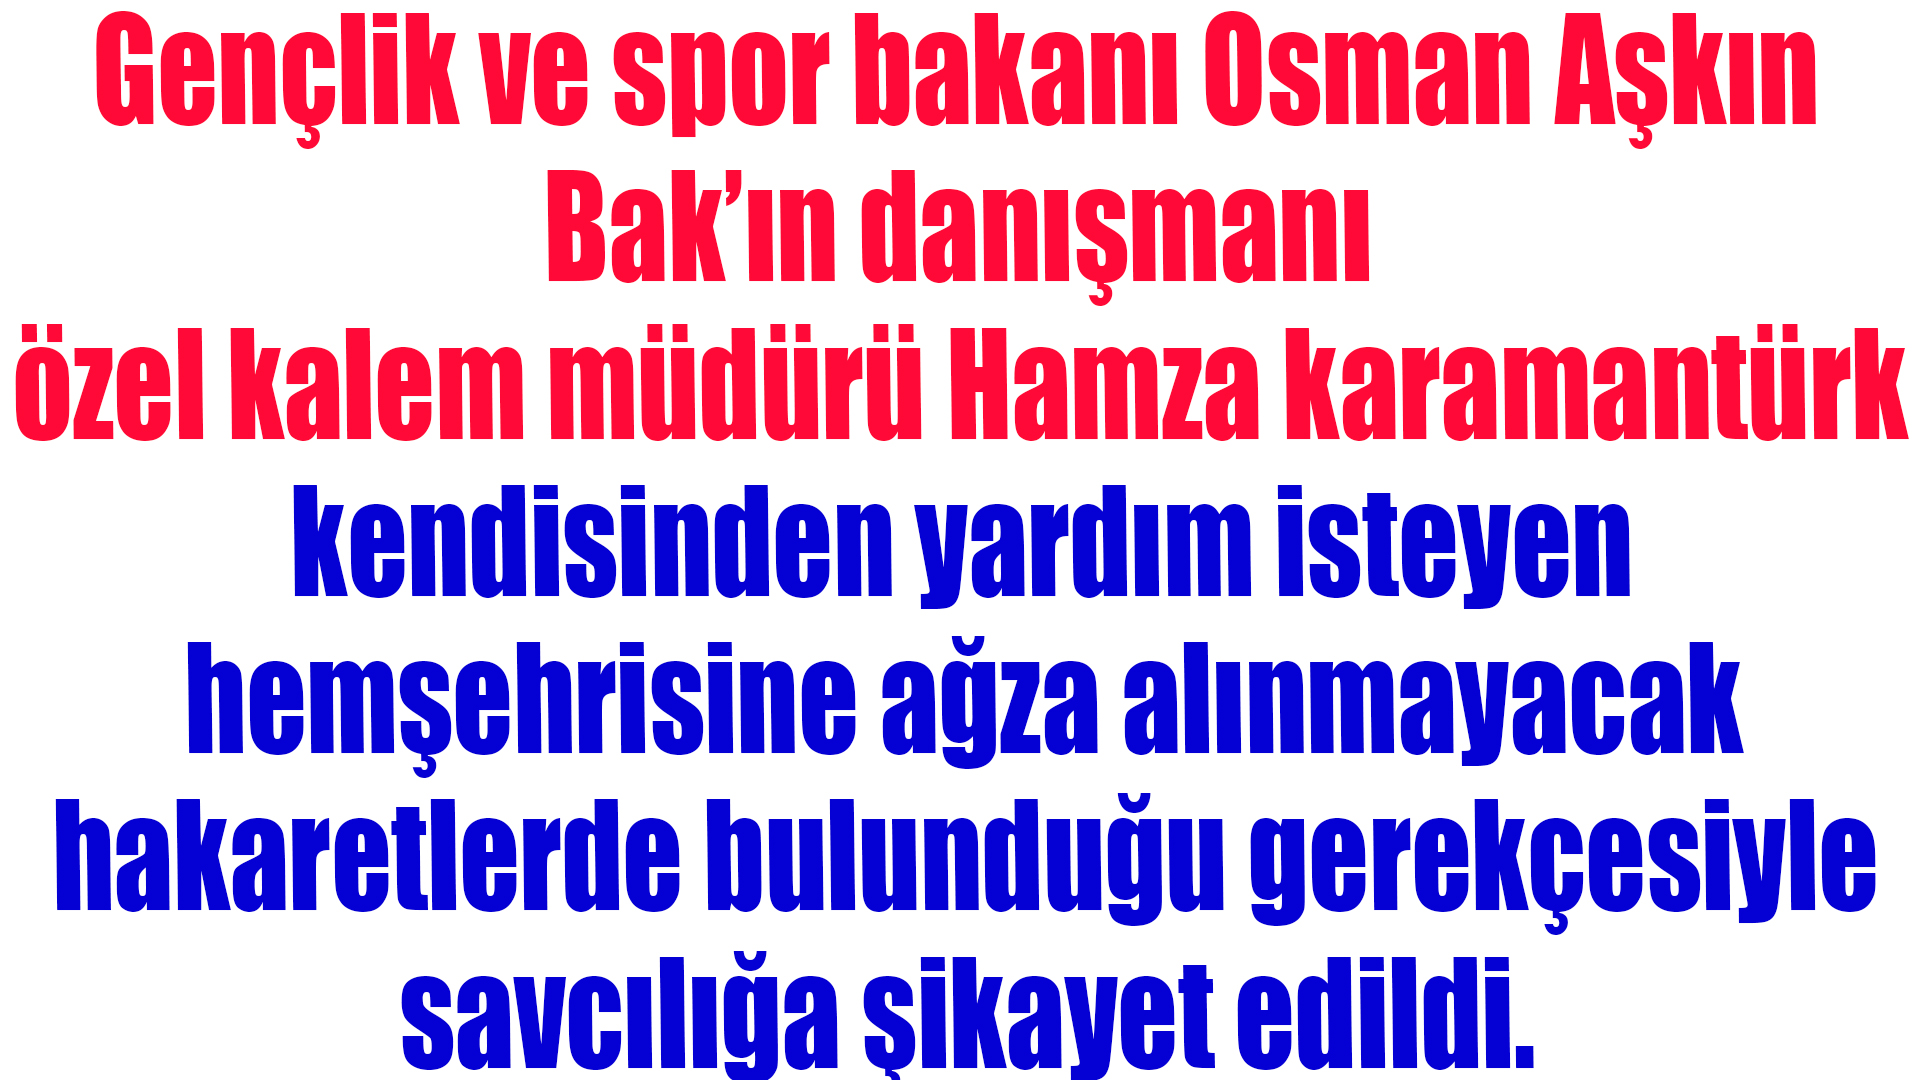 Osman Aşkın Bak’ın özel kalem müdüründen skandal sözler …!!!